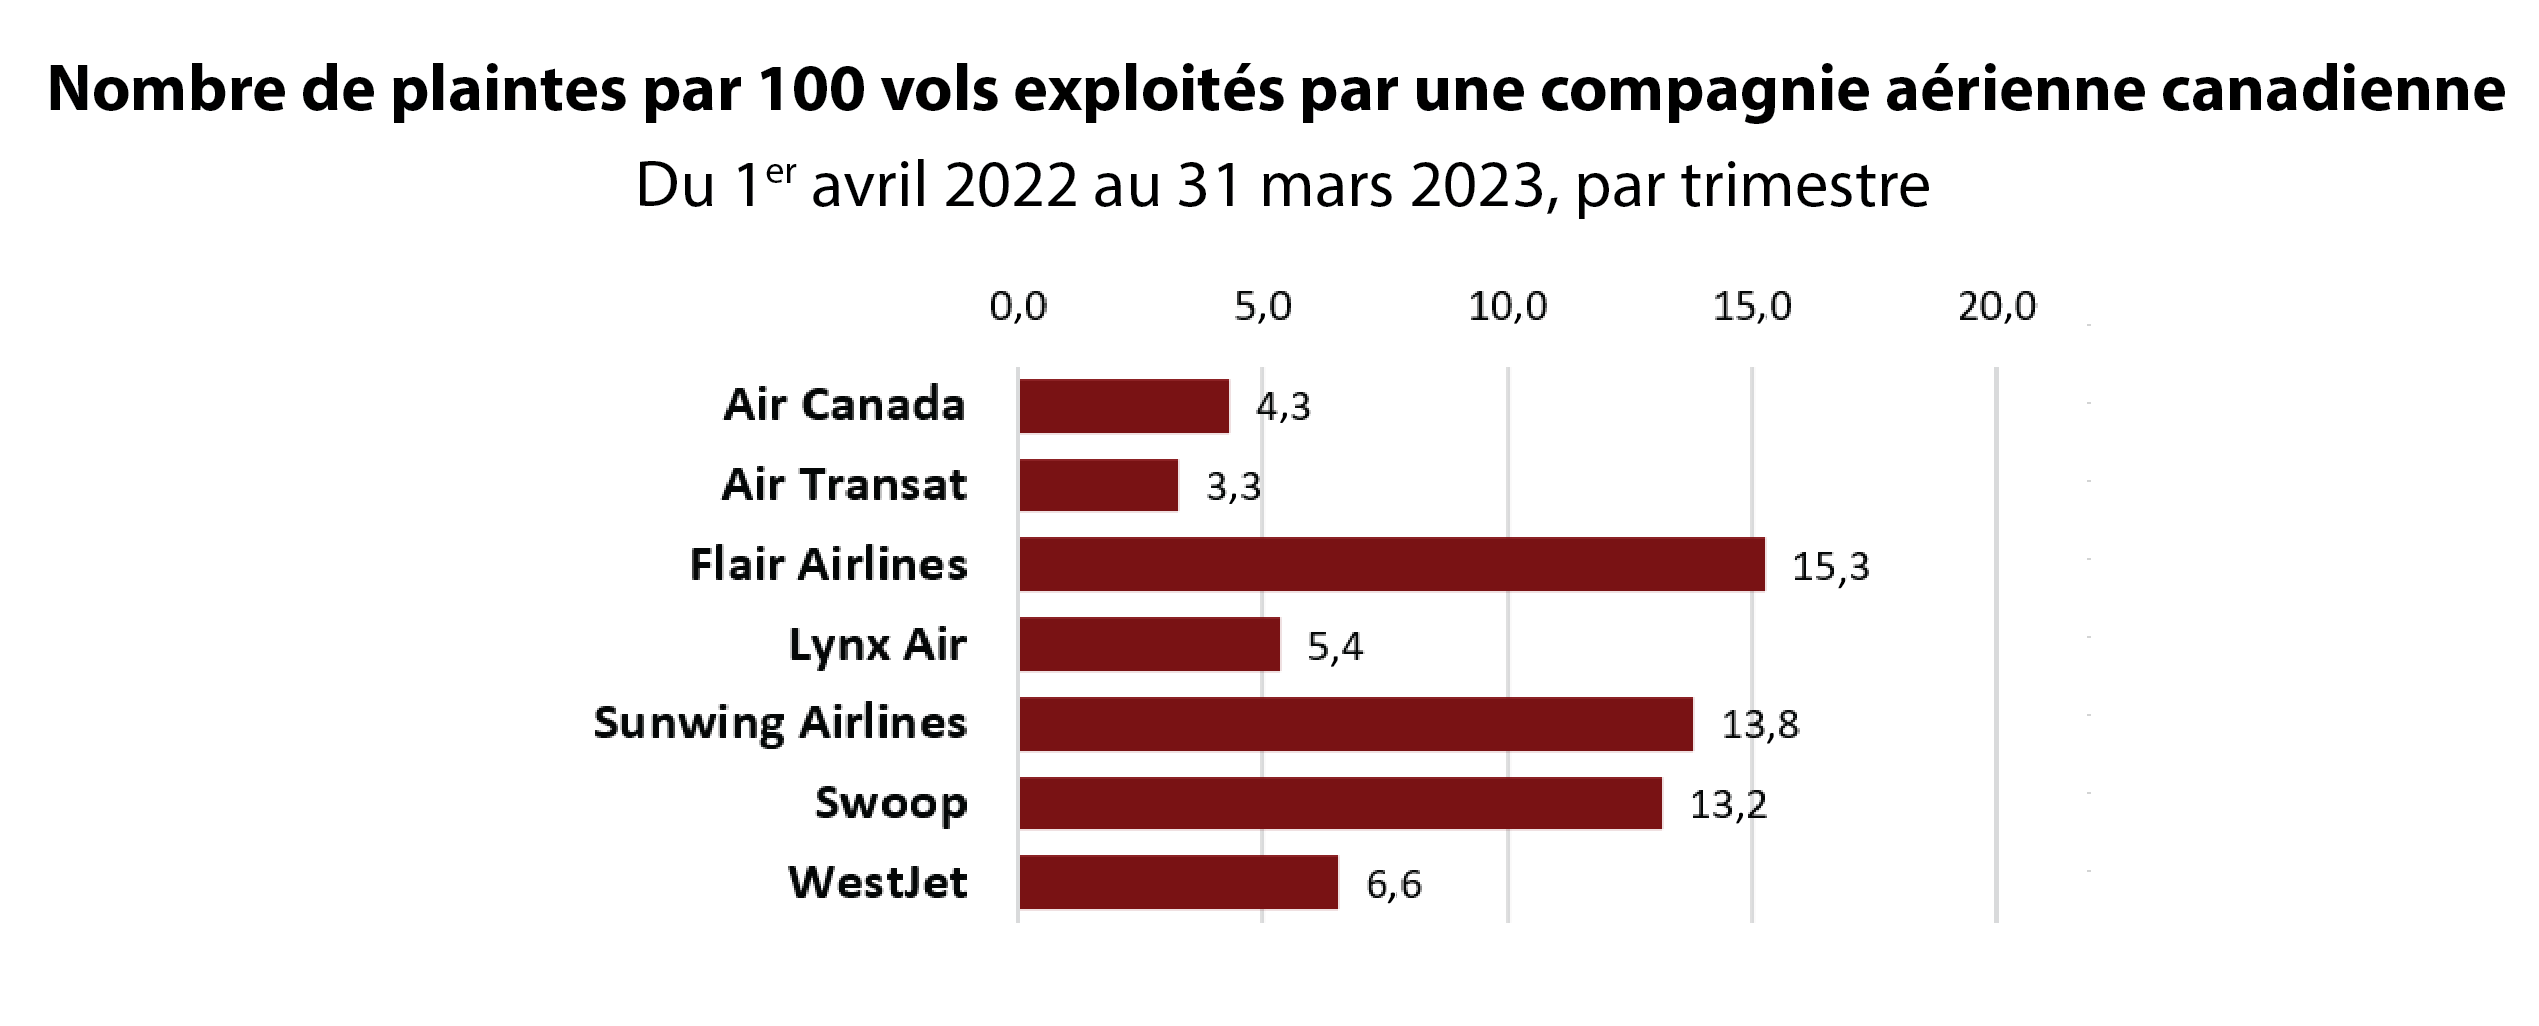 Graphique du nombre de plaintes par 100 vols exploités par une compagnie aérienne canadienne du 1er avril 2022 au 31 mars 2023, par trimestre